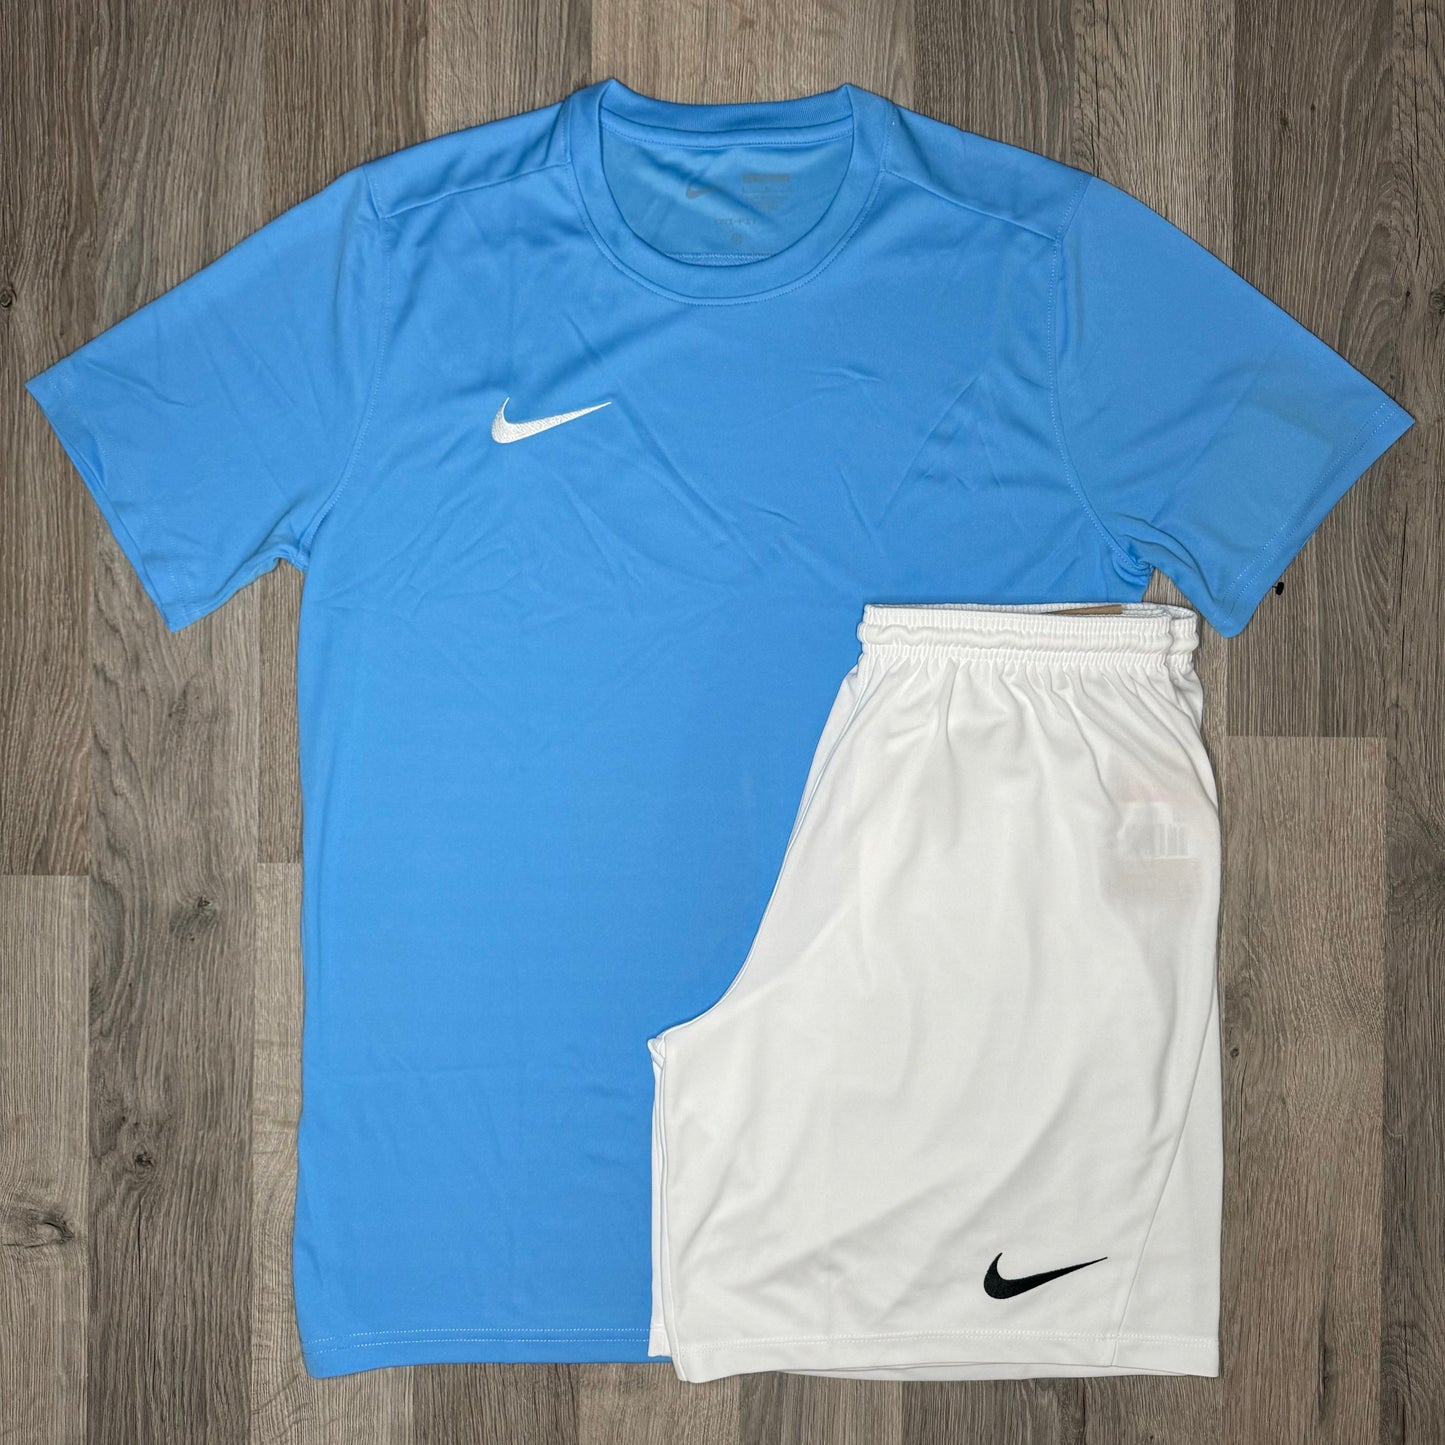 Nike Dri Fit Set - Tee & Shorts - University Blue / White (Junior)